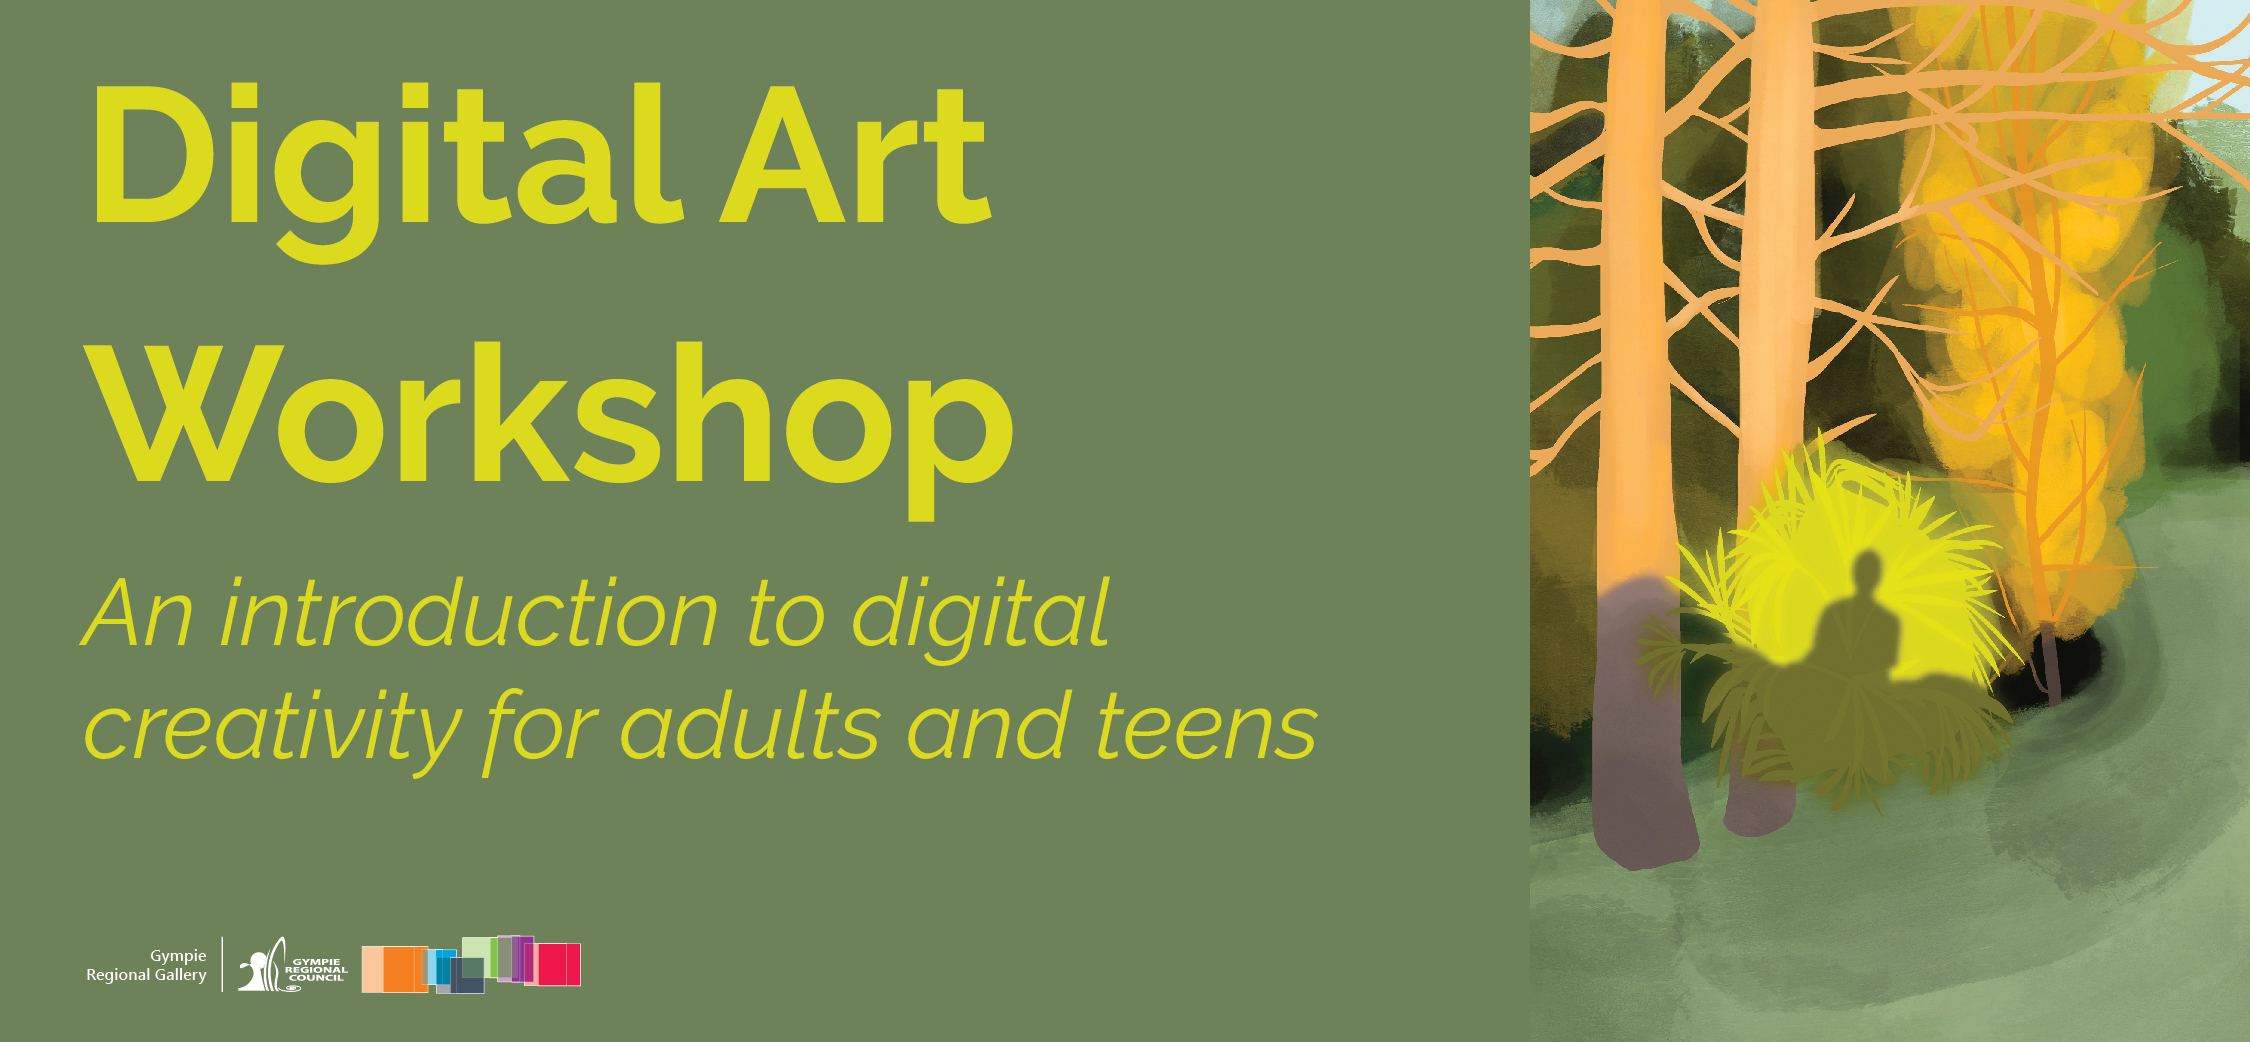 Digital art workshop web image v2